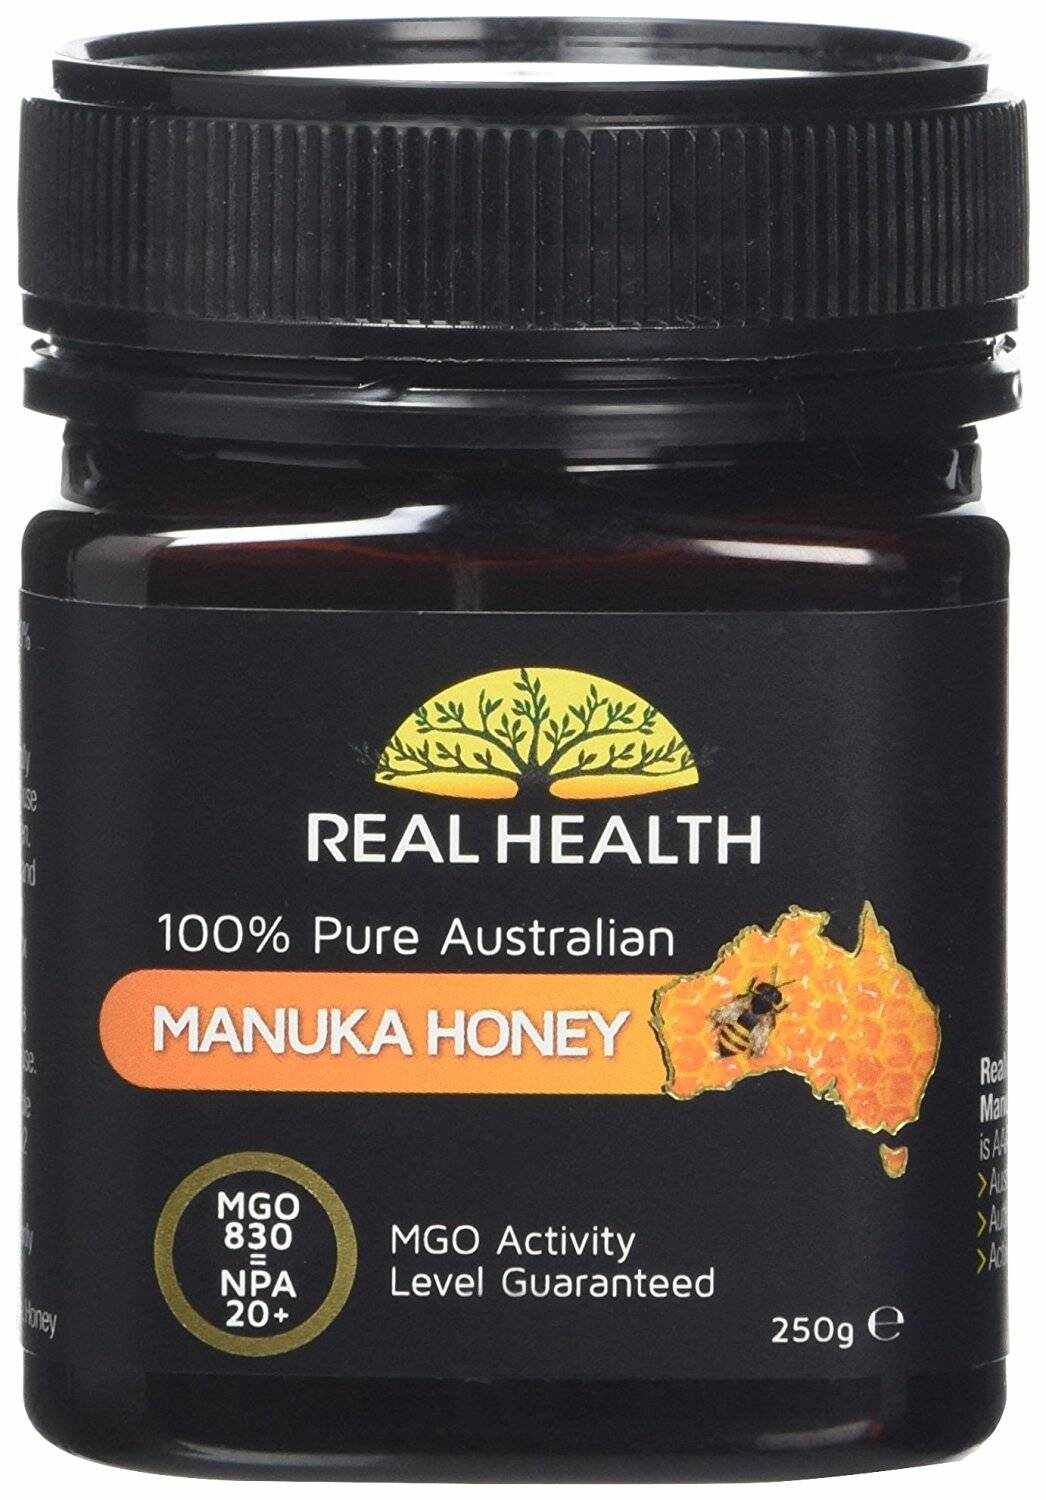 Miere de Manuka MGO 830, NPA 20+, 250g - Real Health